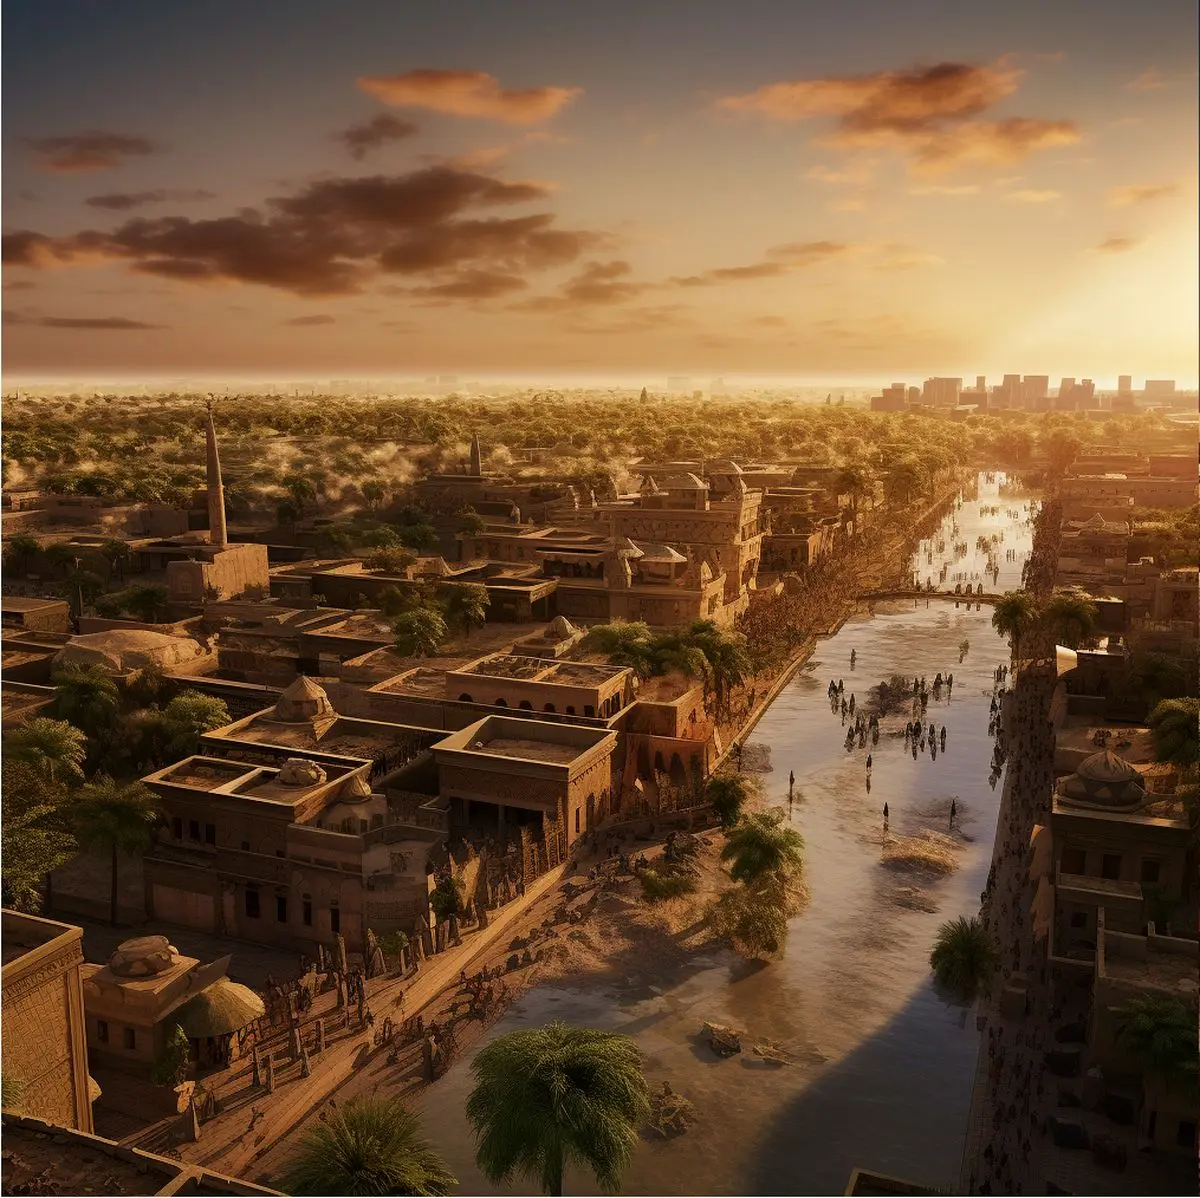 میخوای ببینی اهواز هزار سال پیش چه شکلی بوده؟! شهر اهواز و رودخانه کارون در 1000 سال پیش
